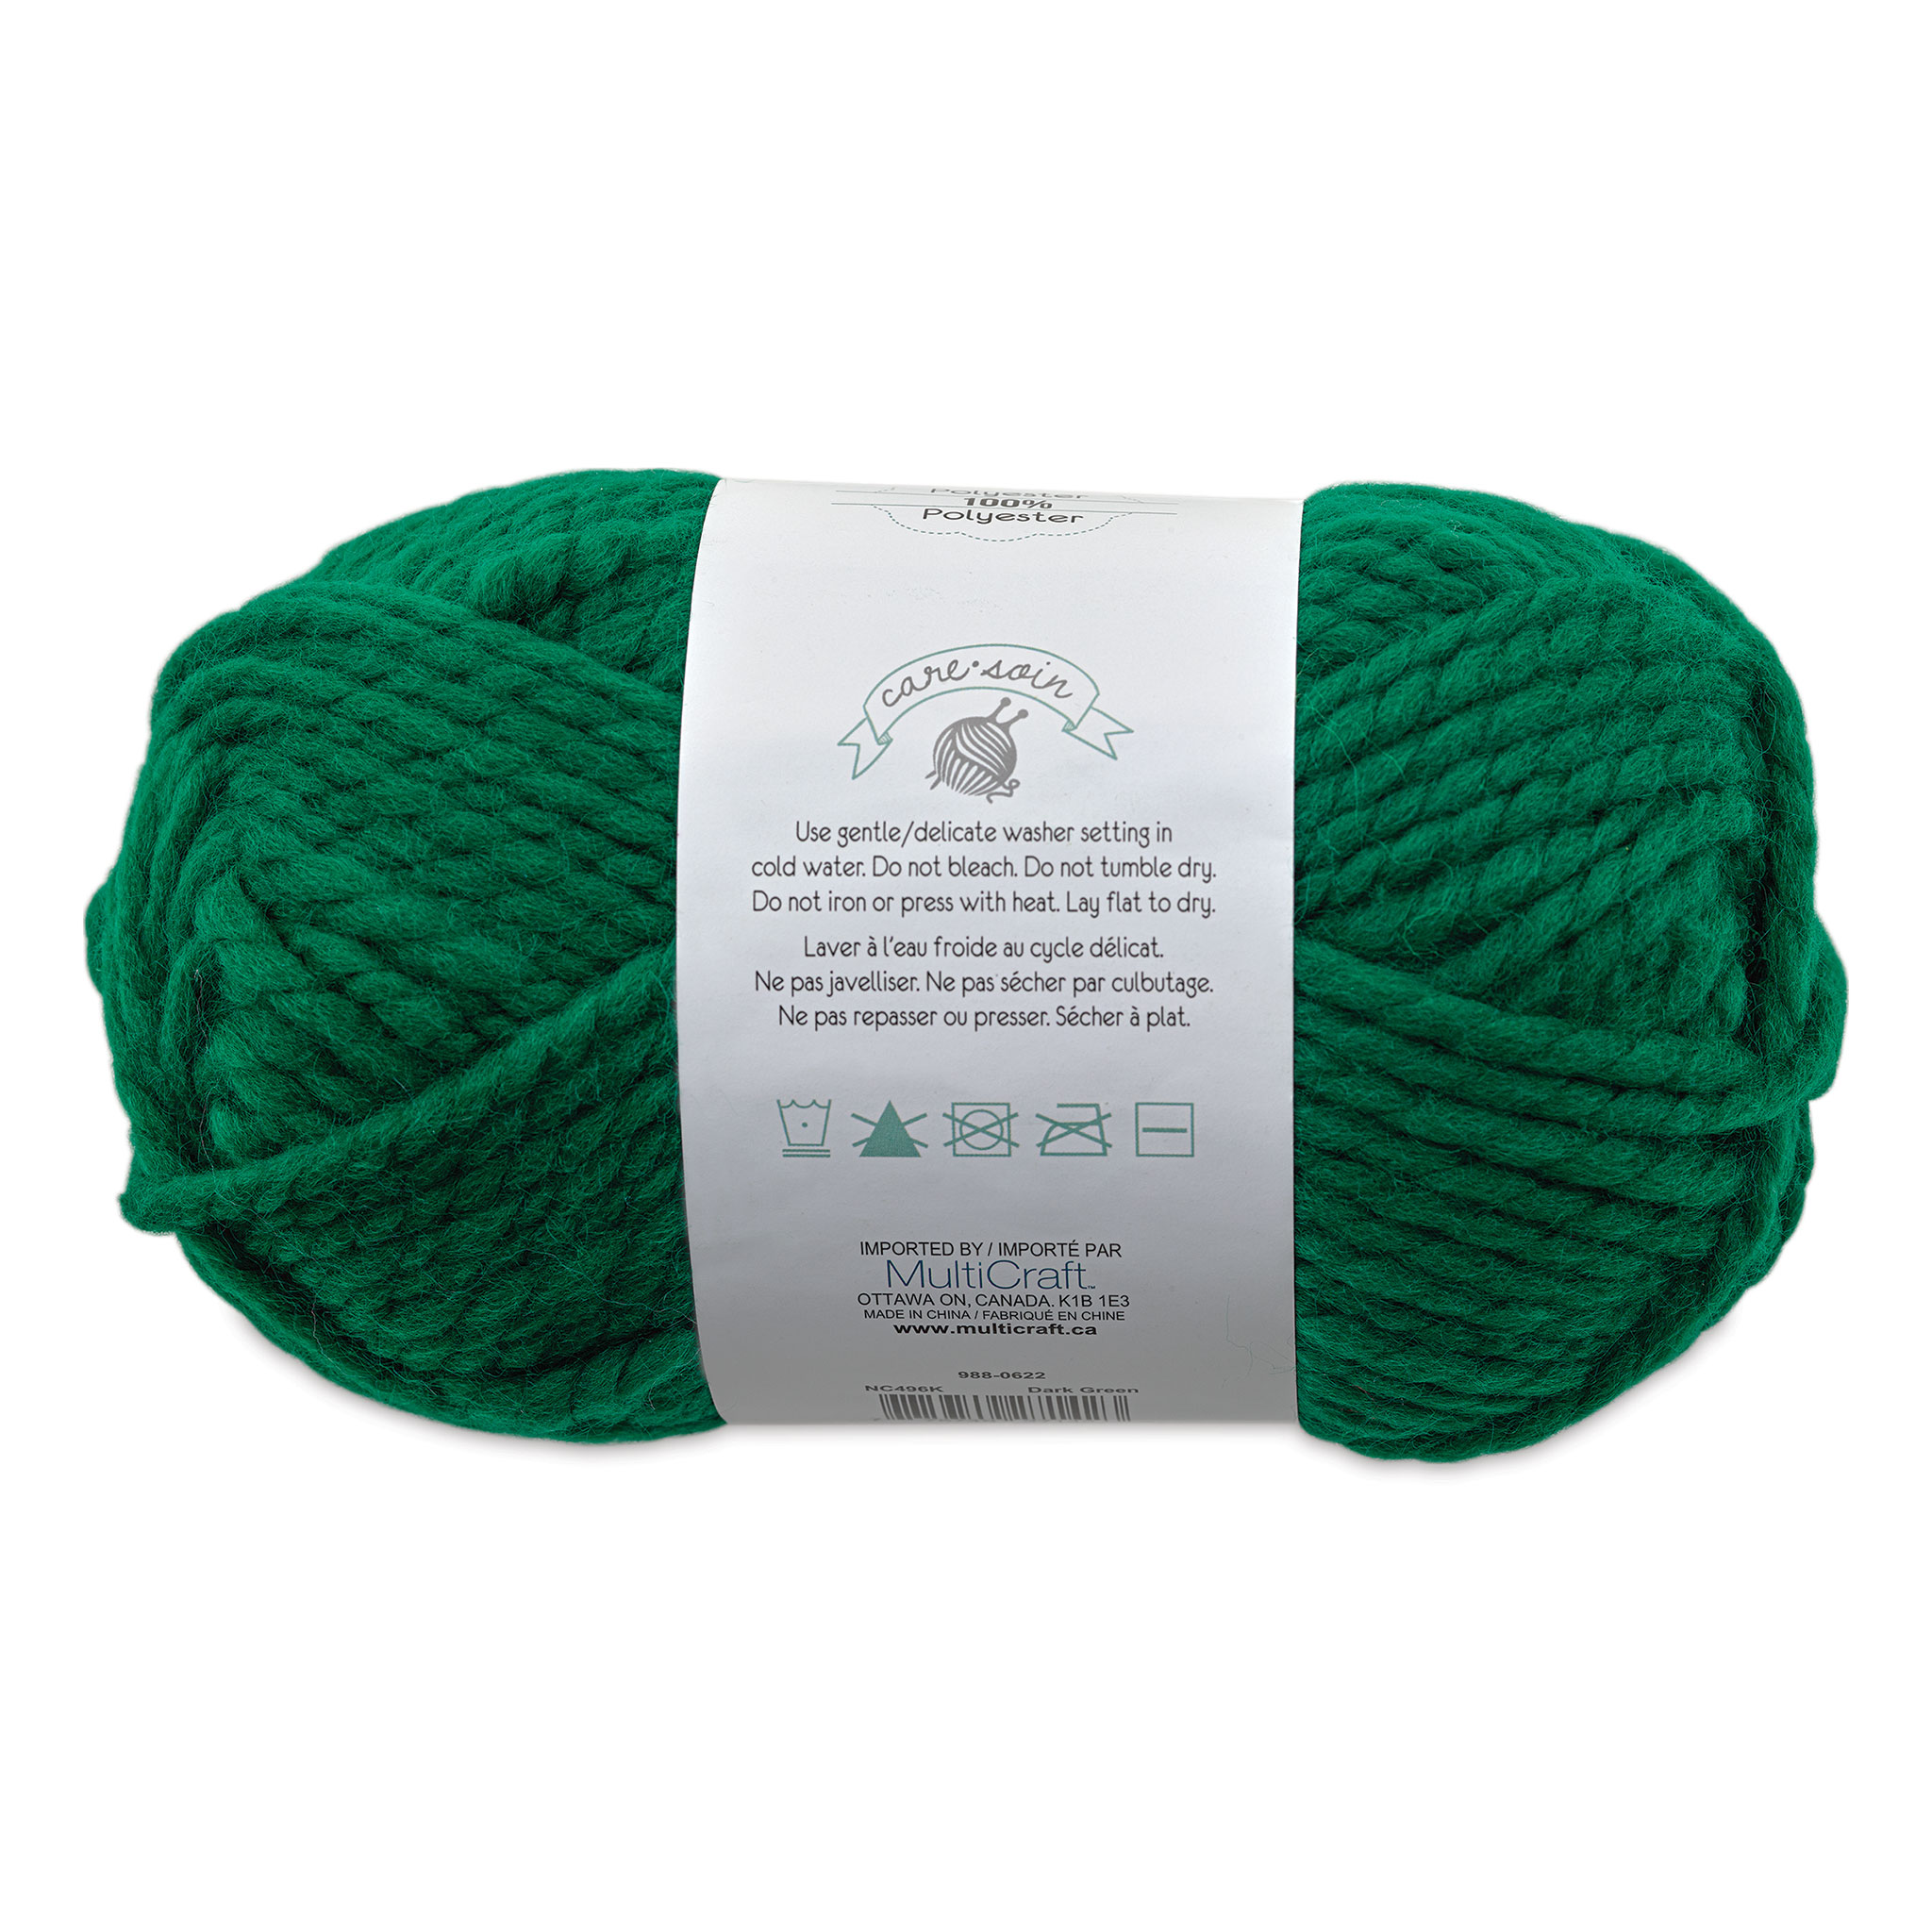 Hunter Green Chunky Knit Yarn